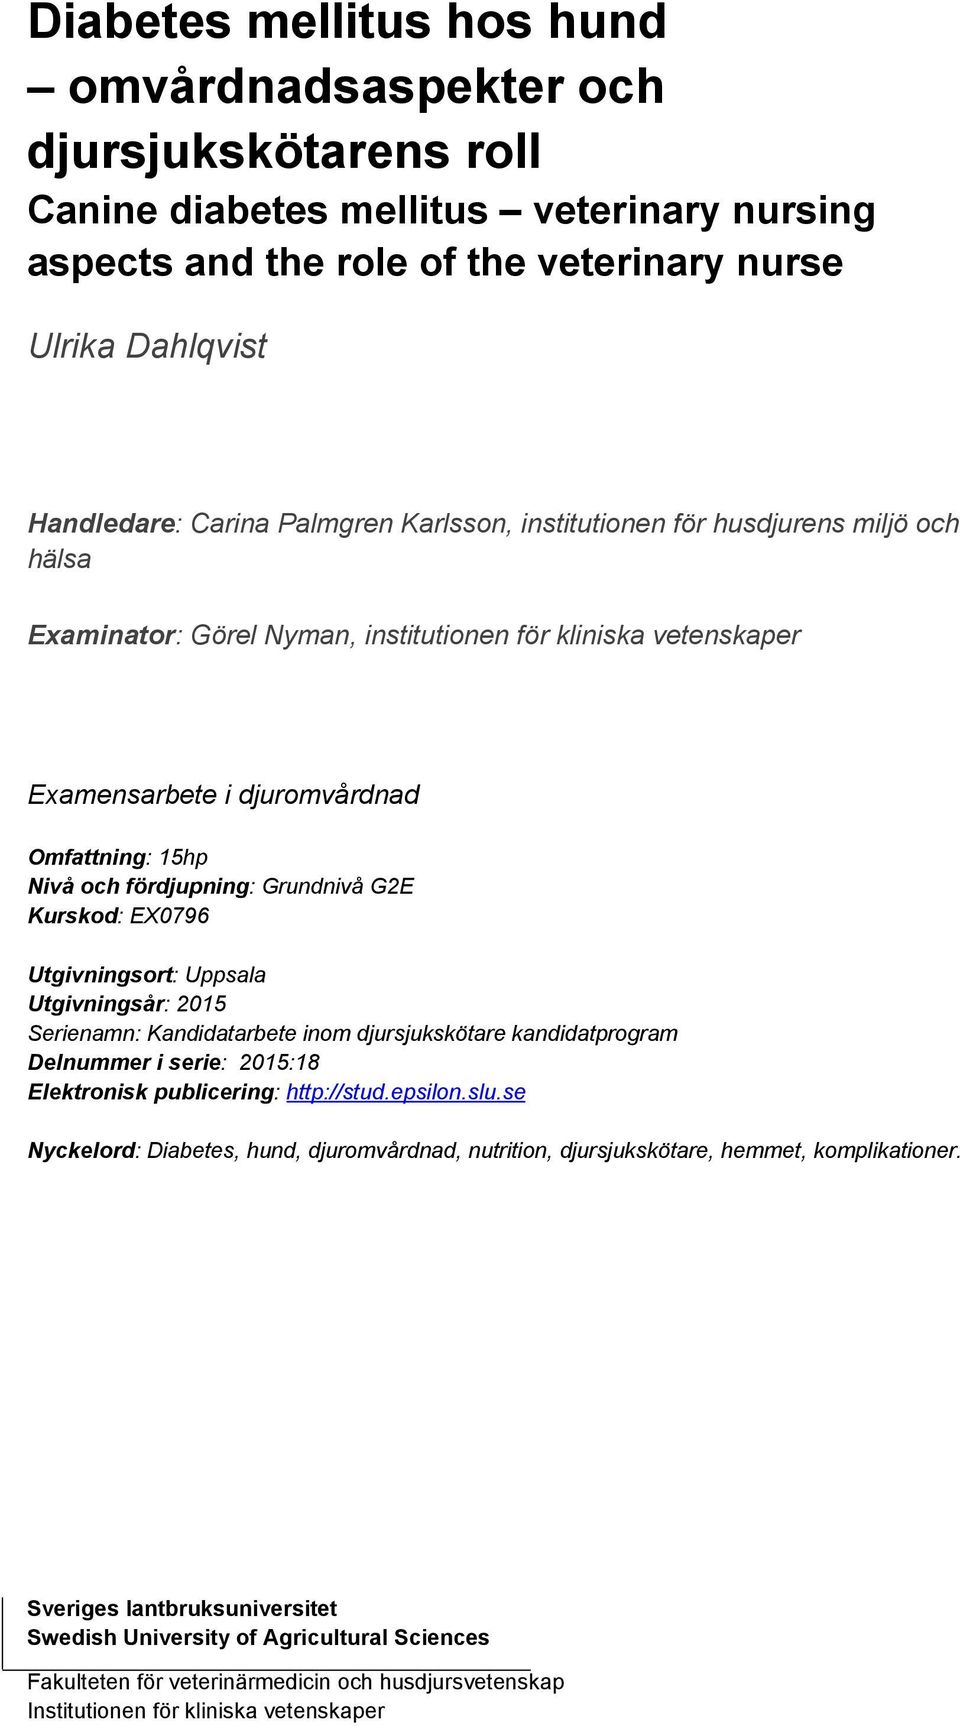 Grundnivå G2E Kurskod: EX0796 Utgivningsort: Uppsala Utgivningsår: 2015 Serienamn: Kandidatarbete inom djursjukskötare kandidatprogram Delnummer i serie: 2015:18 Elektronisk publicering: http://stud.